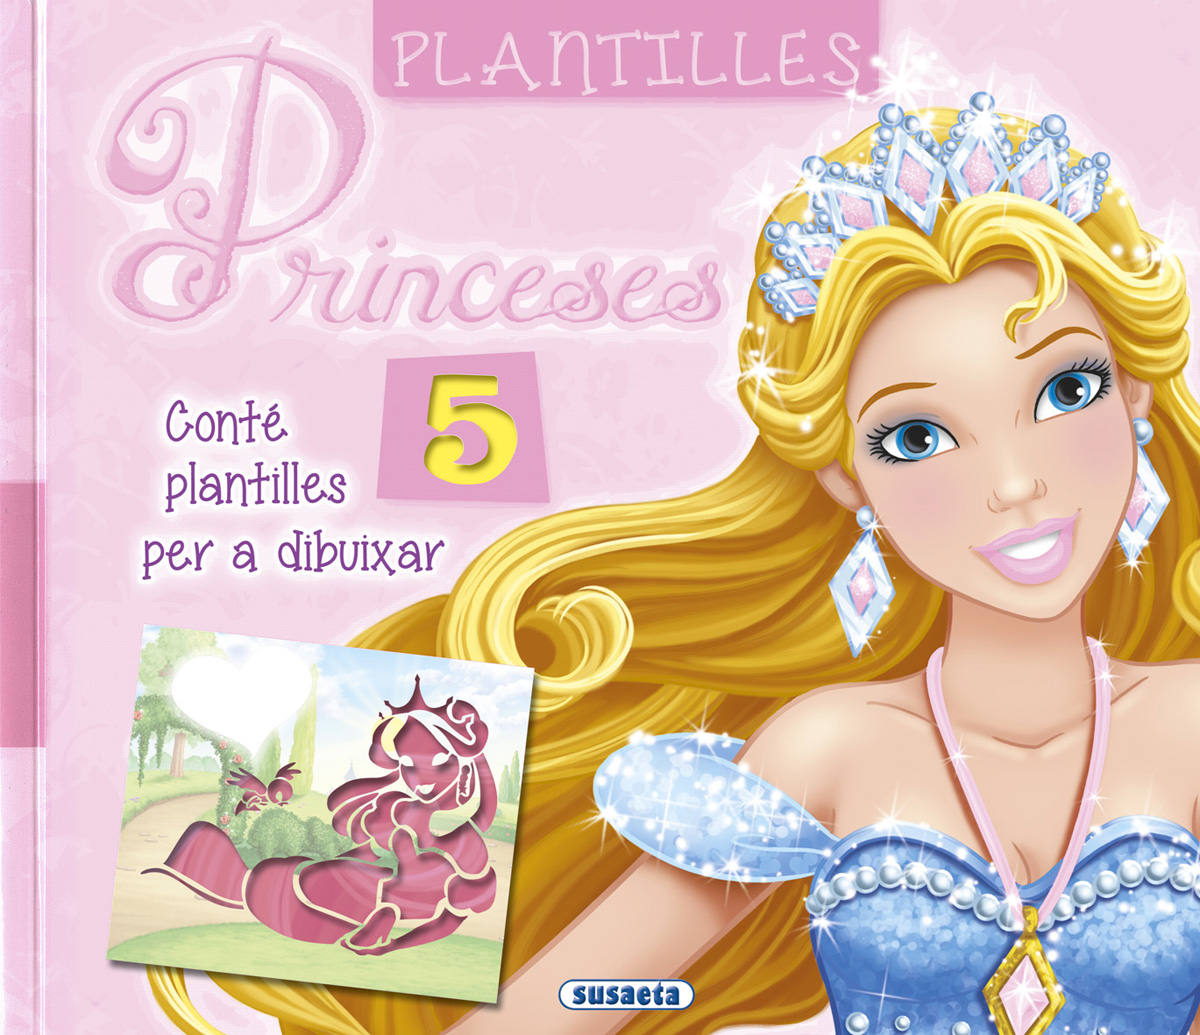 Plantilles princeses